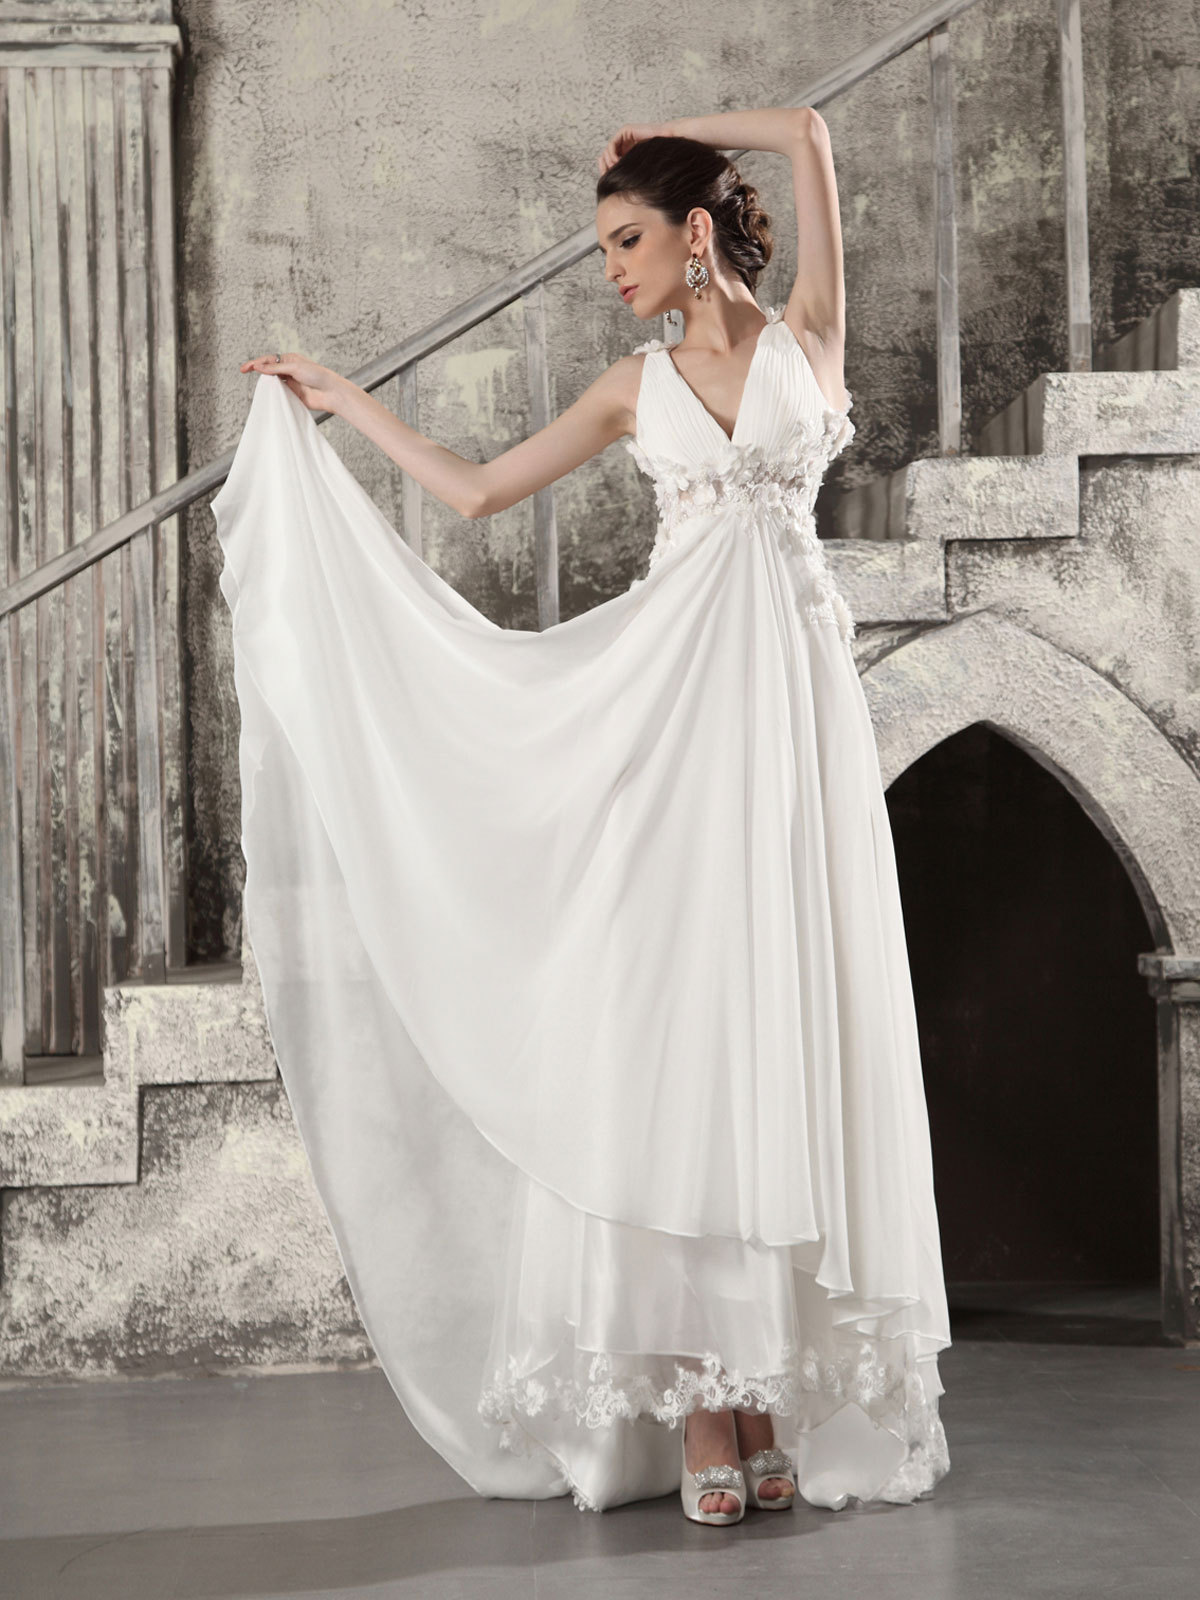 Свадебные платья в греческом стиле: модные модели, аксессуары